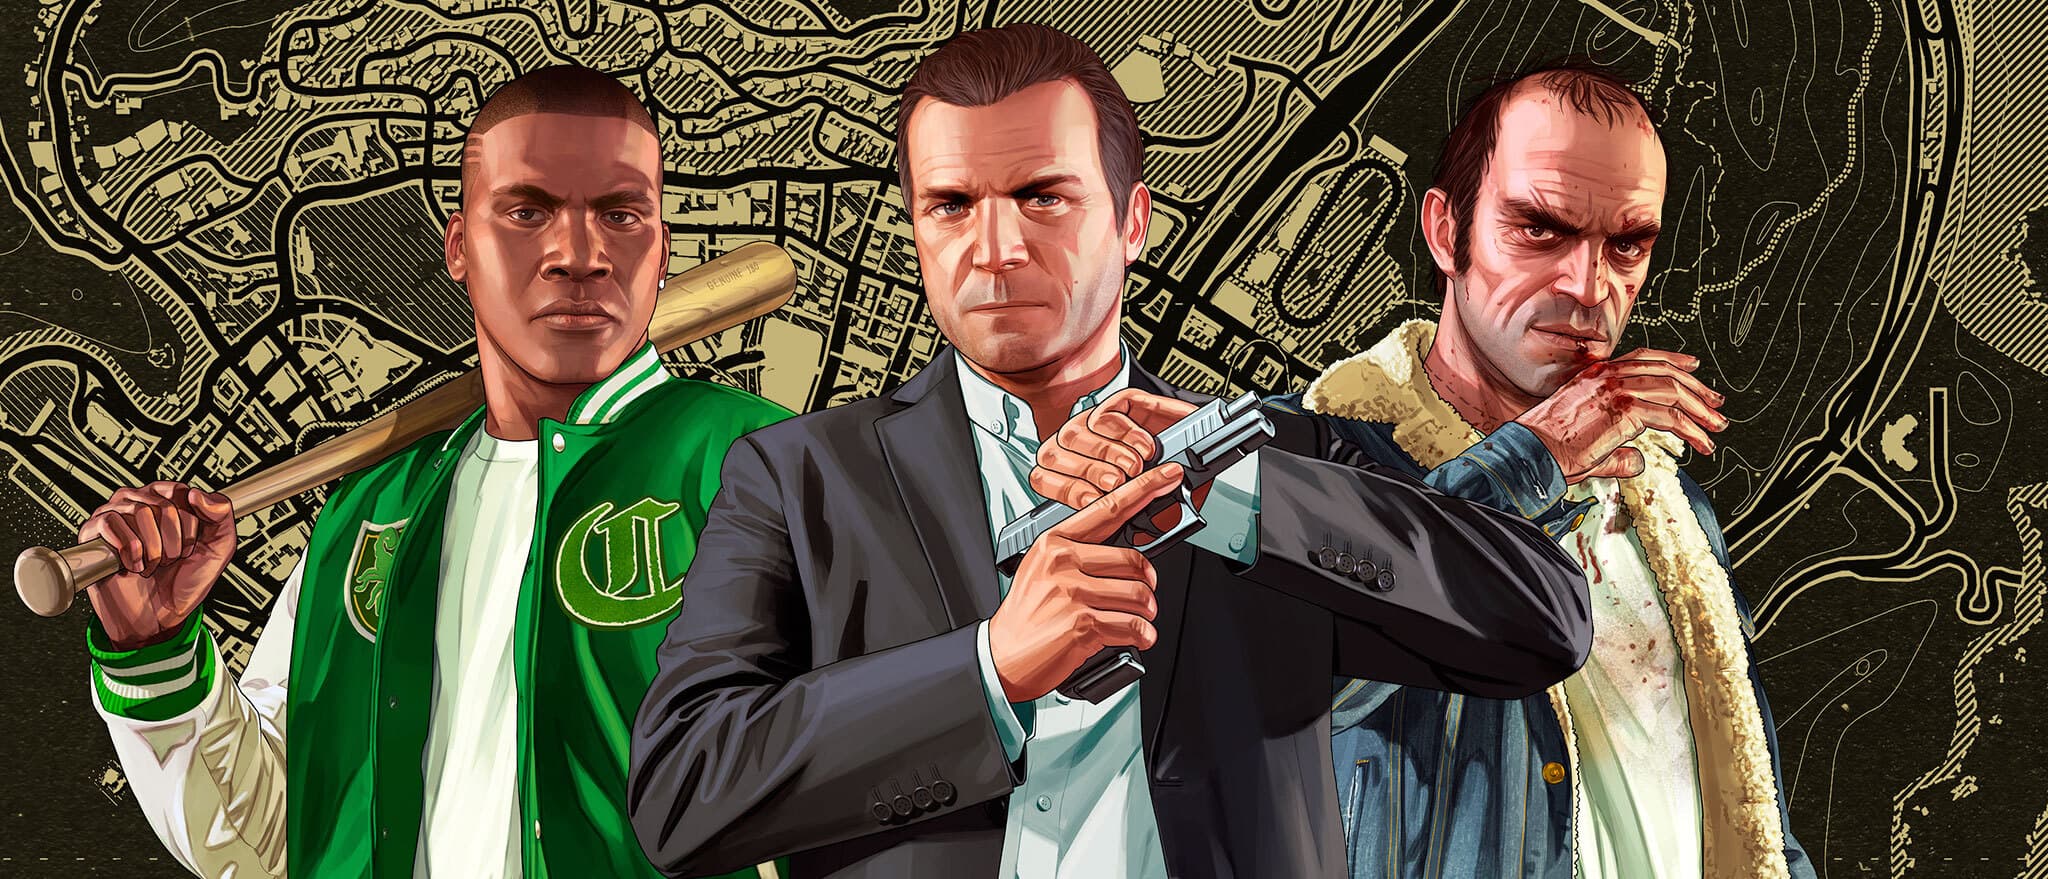 Jogo Grand Theft Auto V (GTA 5) - Xbox 360 - Loja Cyber Z